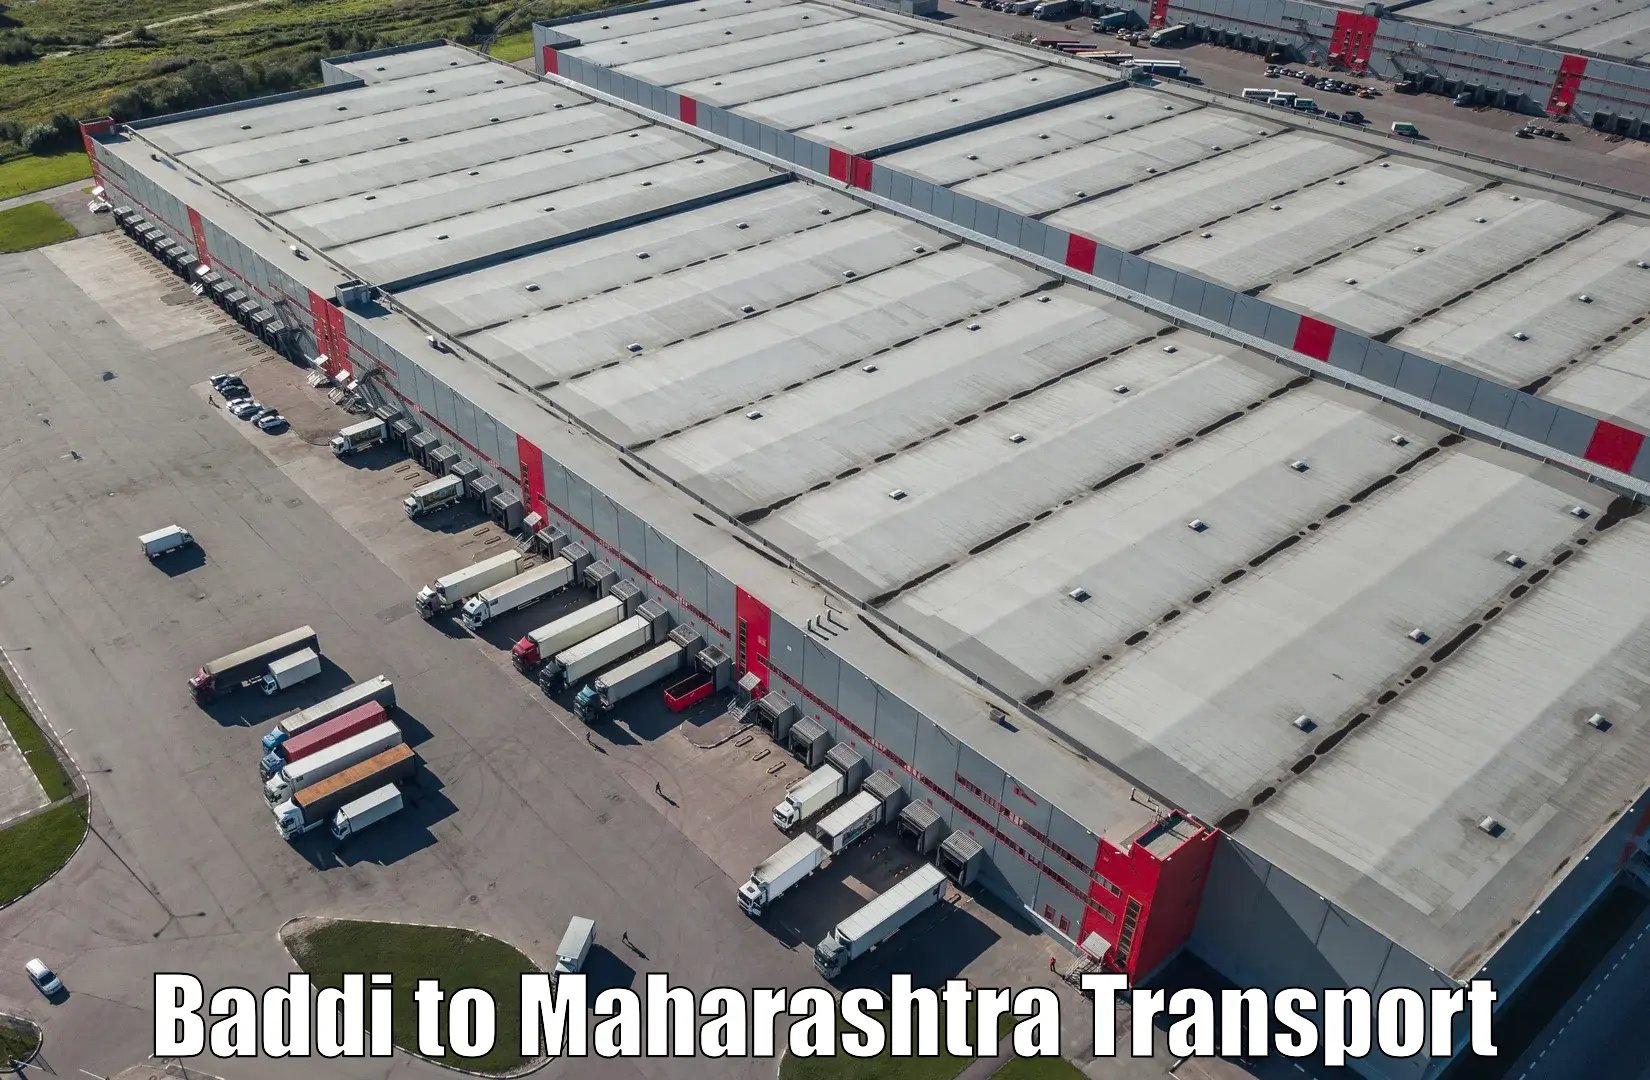 Cargo transportation services Baddi to Mahabaleshwar